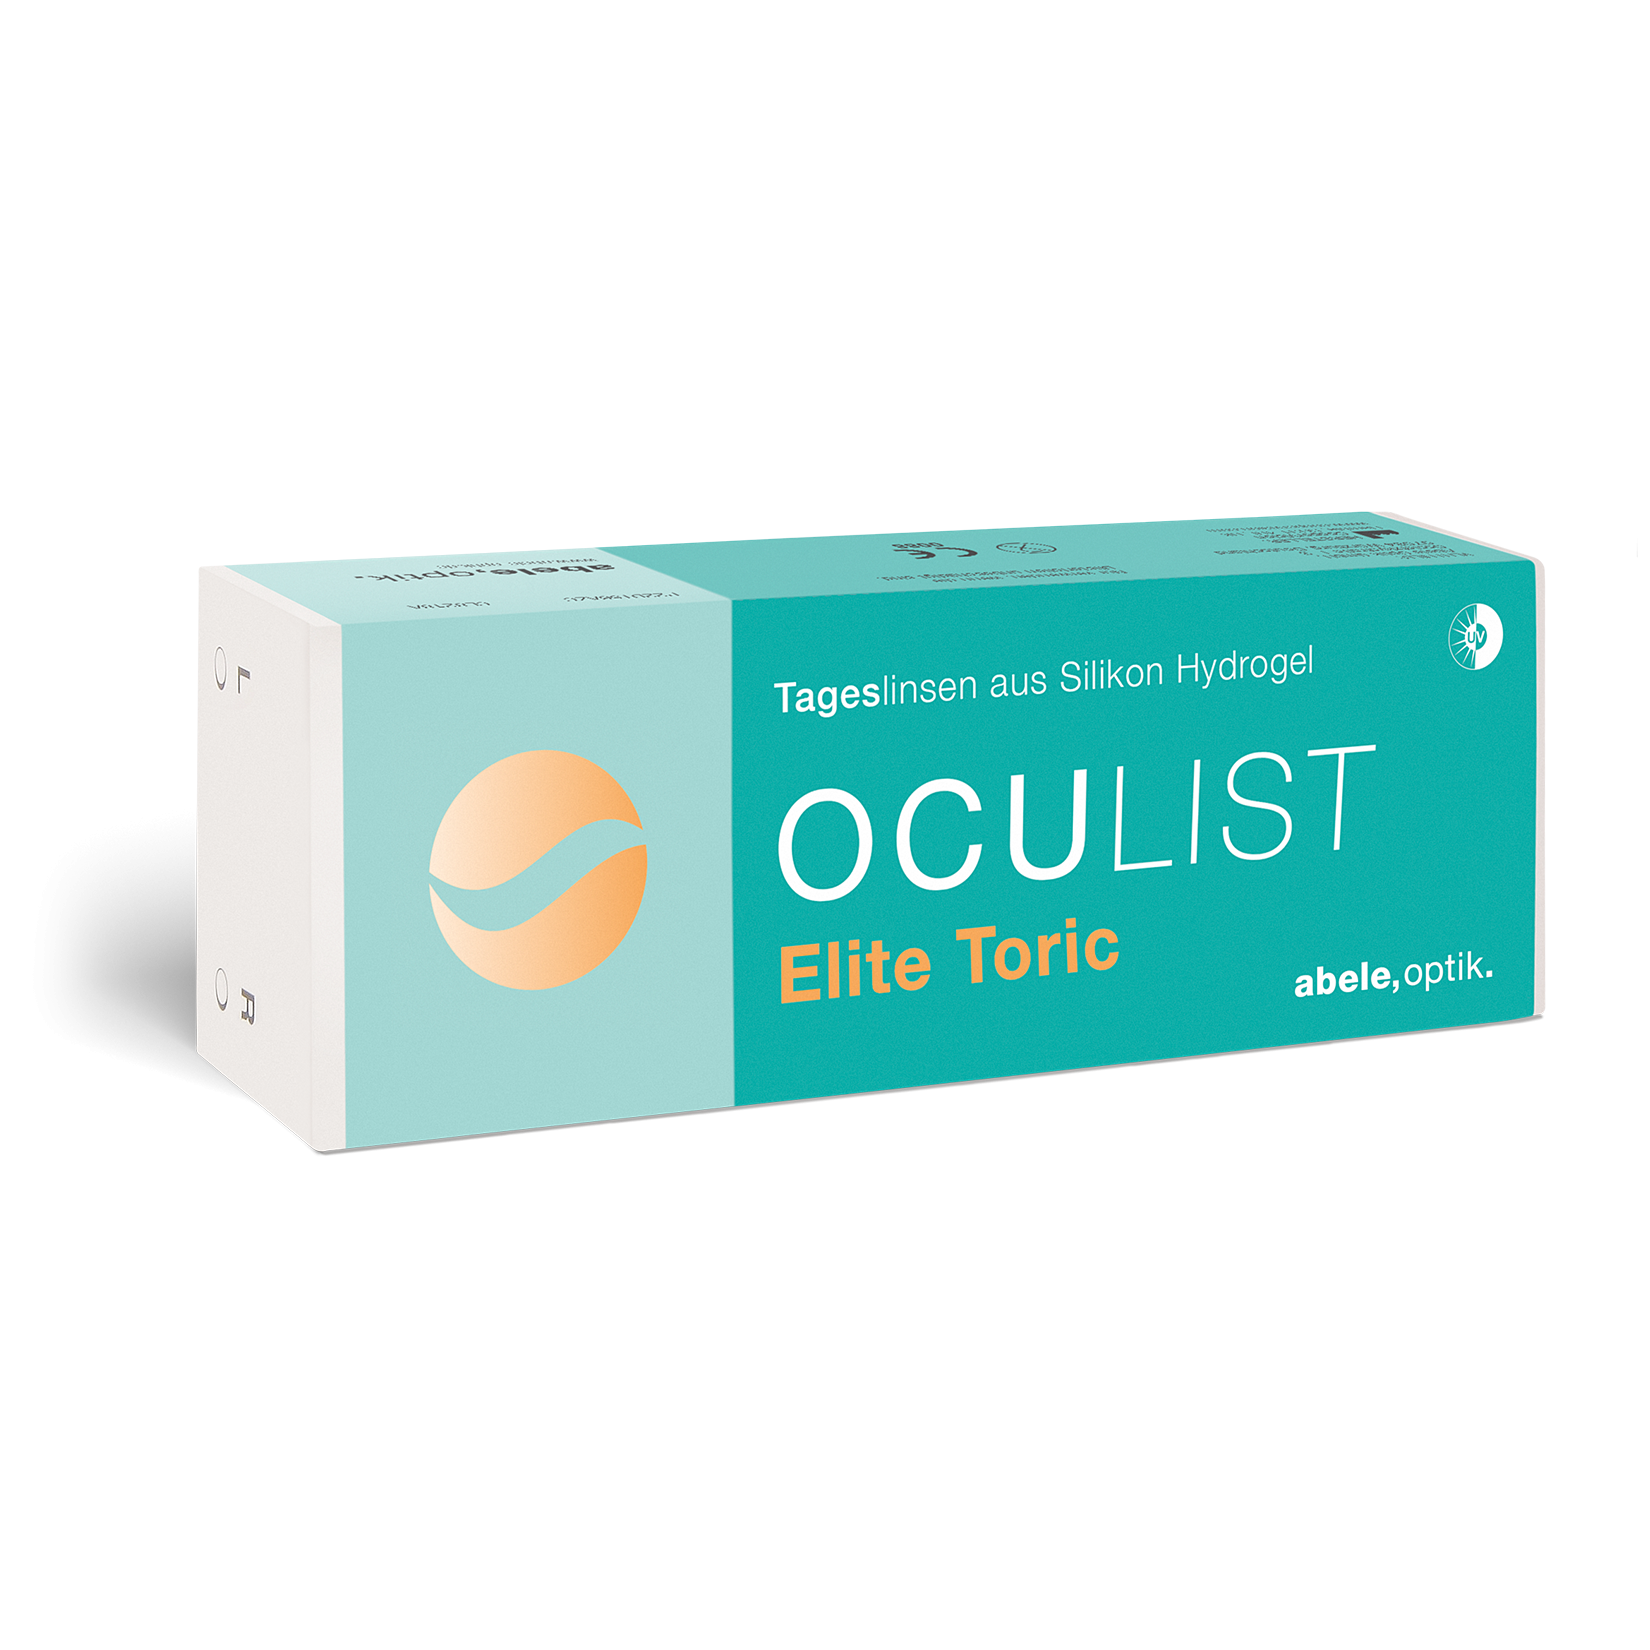 Das Bild zeigt die Verpackung der torischen Kontaktlinse Oculist Elite toric.